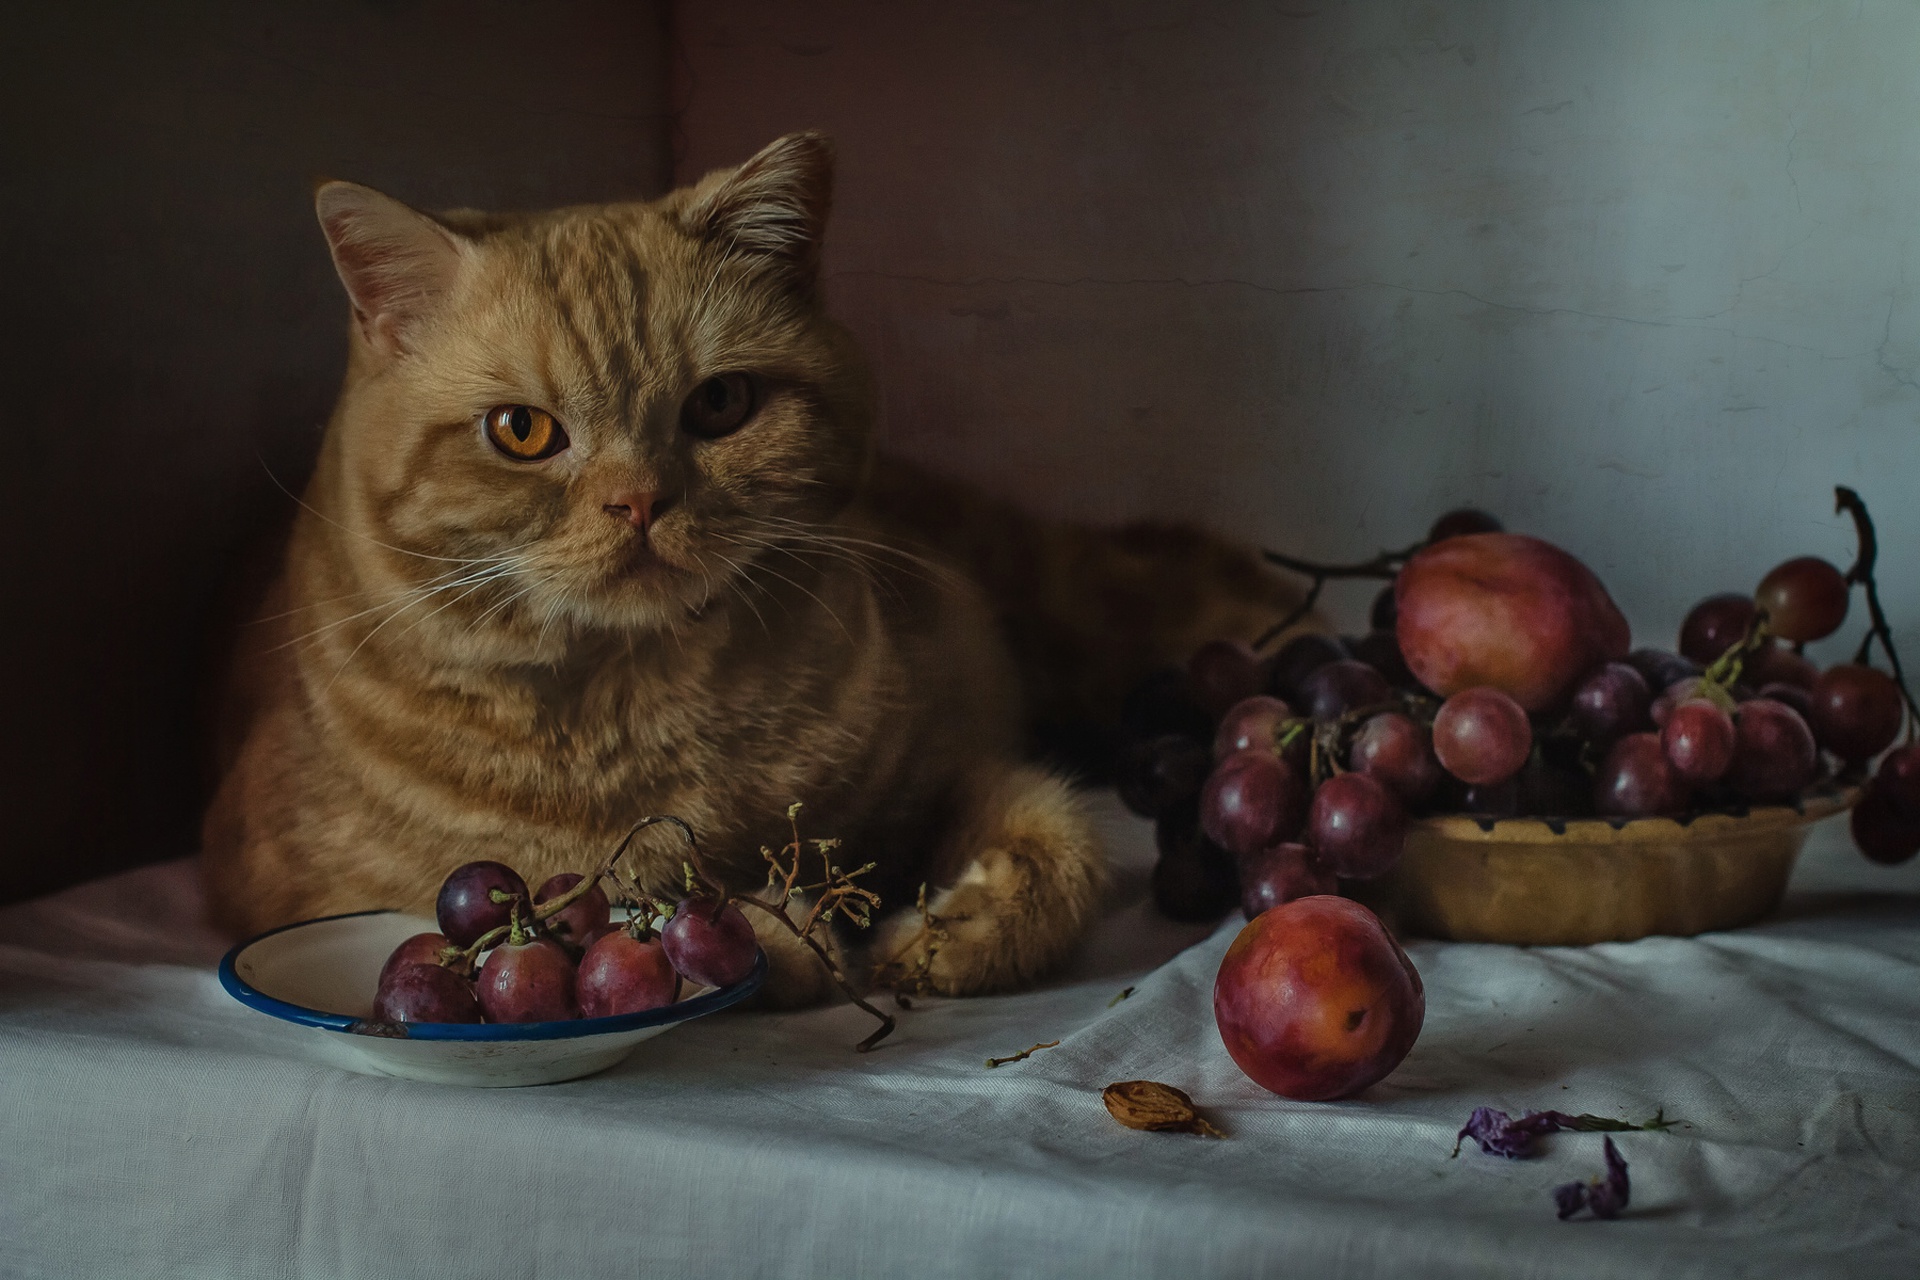 General 1920x1280 animals indoors cats mammals food fruit berries feline